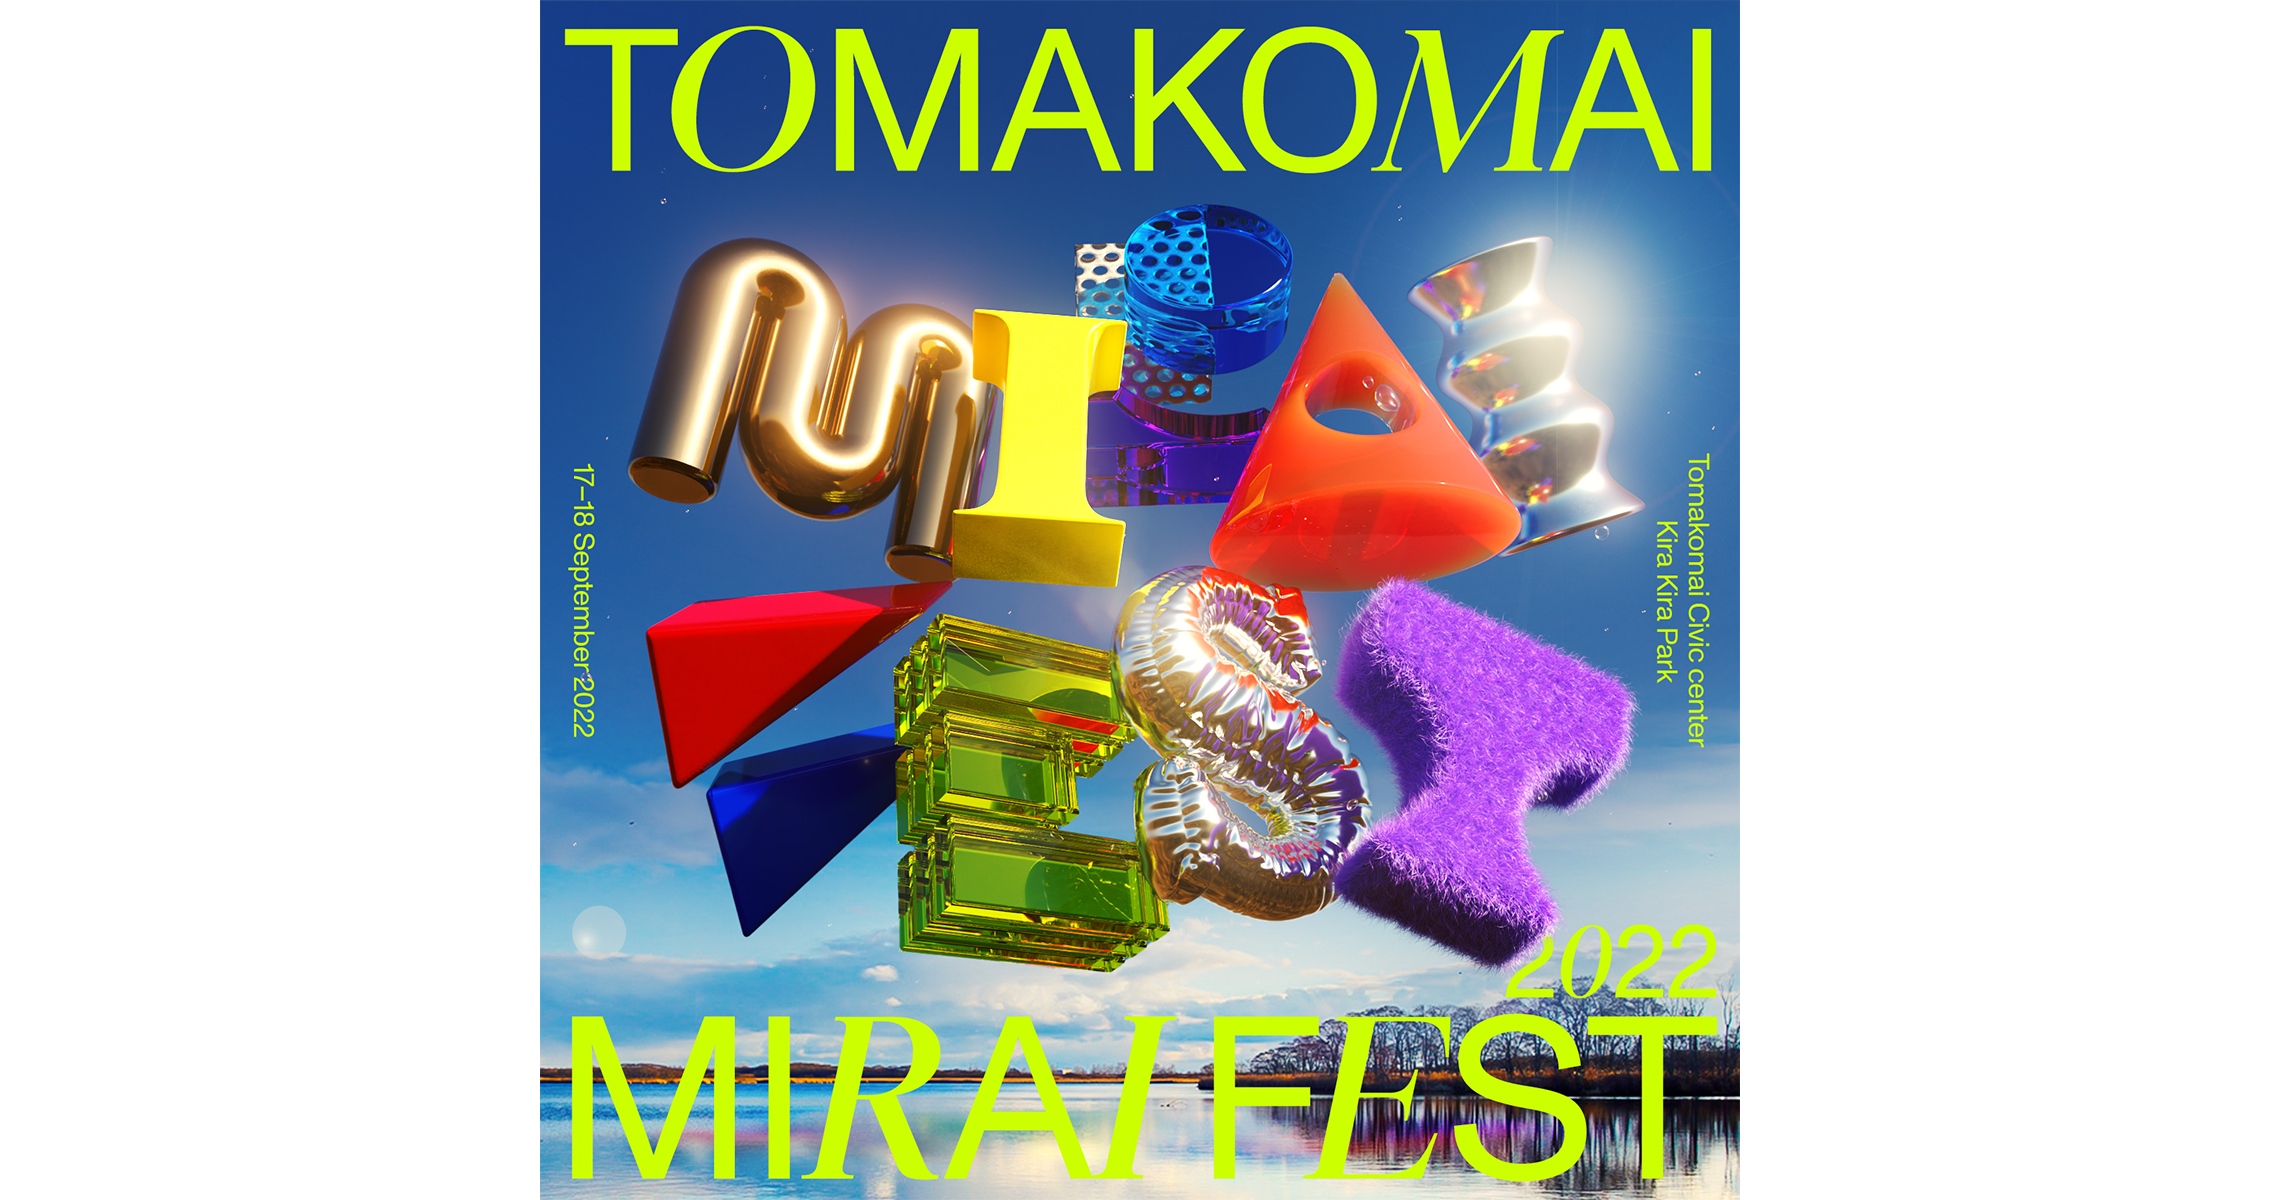 TOMAKOMAI MIRAI FEST 20221